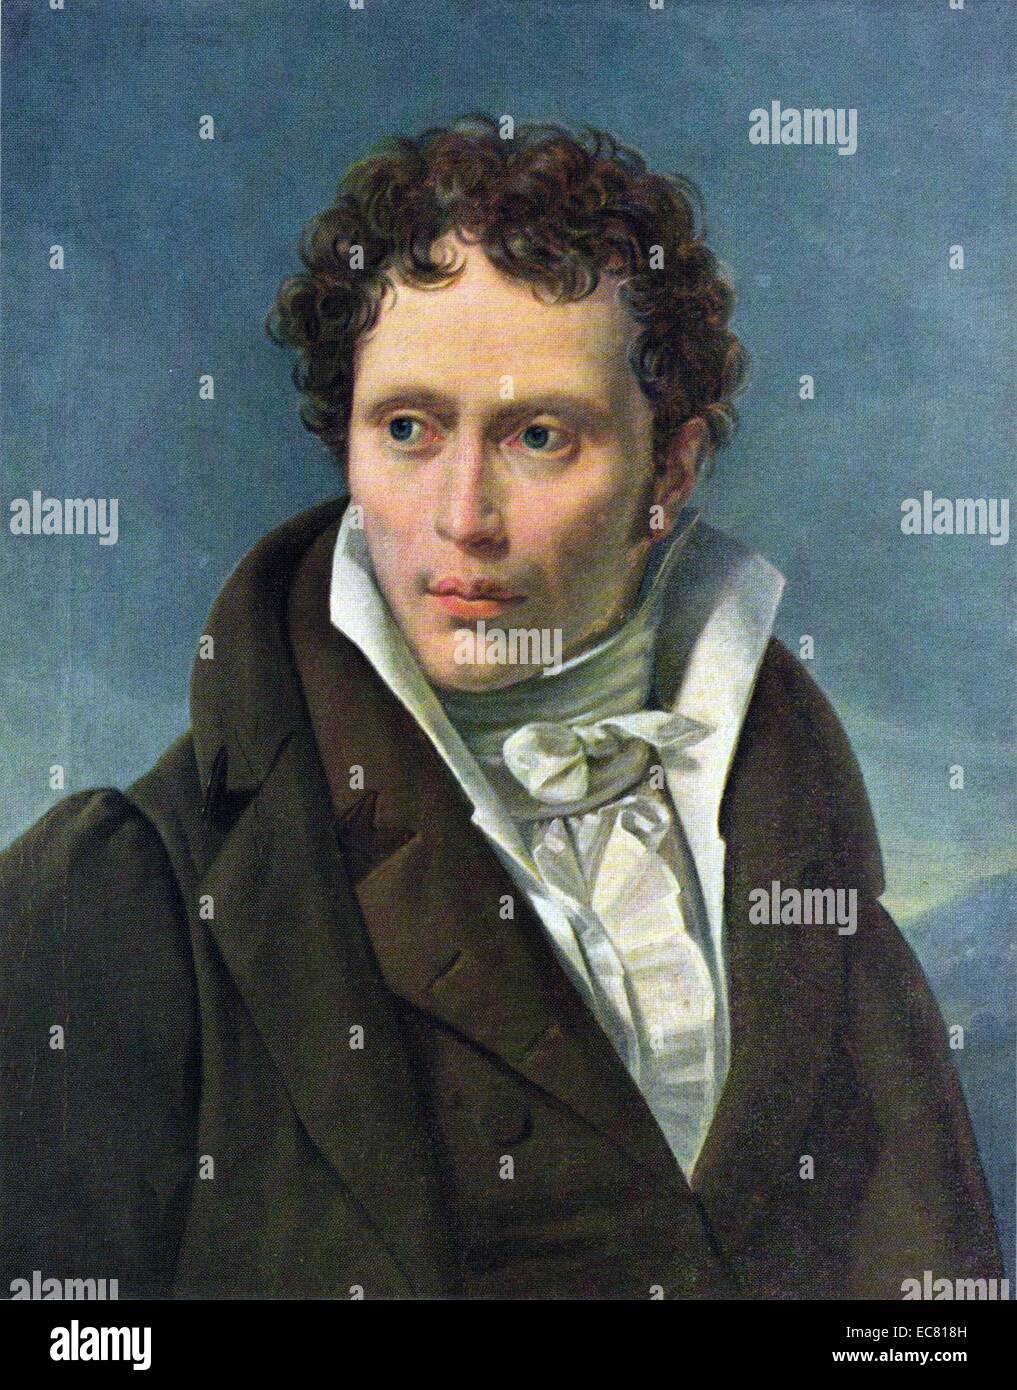 Arthur Schopenhauer als junger Mann, 1815. Porträt von Ludwig Sigismund Ruhl. Schopenhauer (1788 - 1860) war ein deutscher Philosoph am besten für sein Buch bekannt, Die Welt als Wille und Vorstellung, in der er behauptete, dass unsere Welt durch einen ständig unzufrieden werden, ständig auf der Suche nach Befriedigung angetrieben wird. Stockfoto